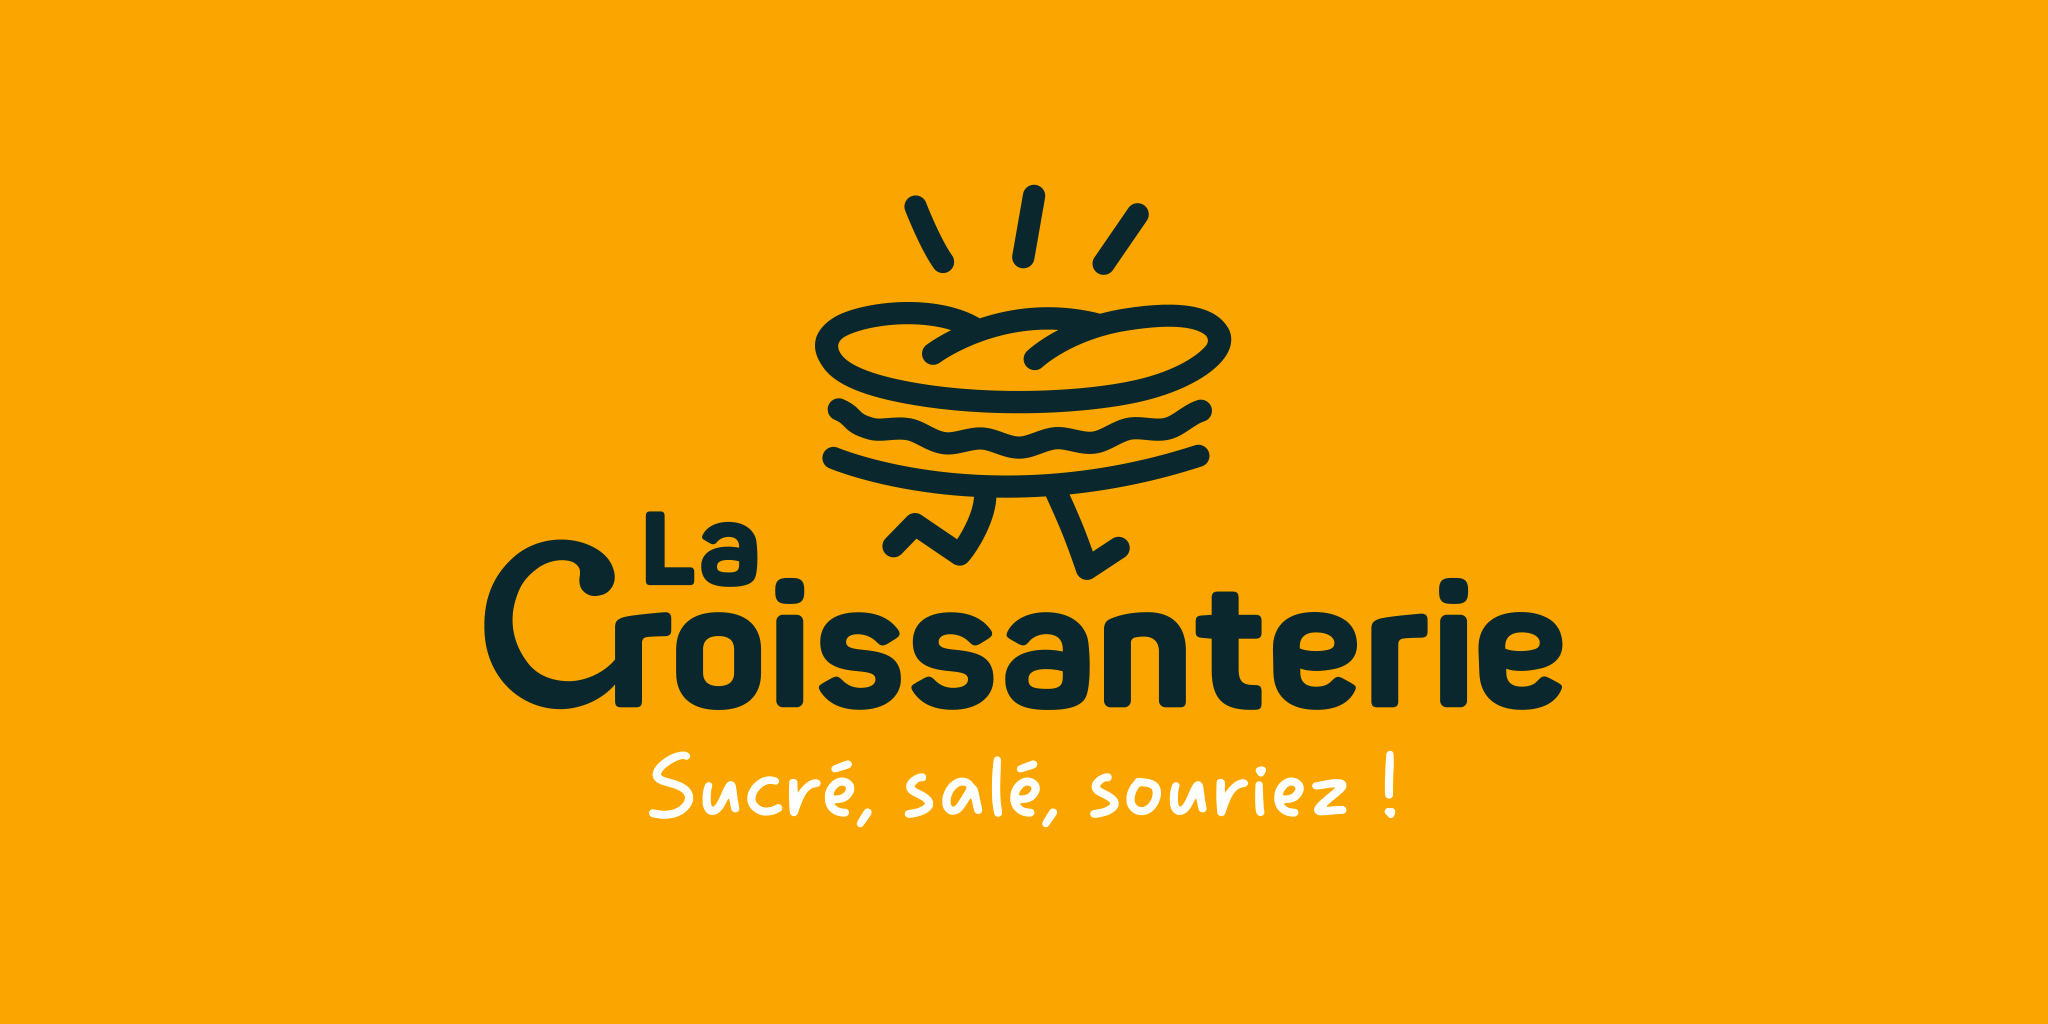 Nouveau logo La croissanterie